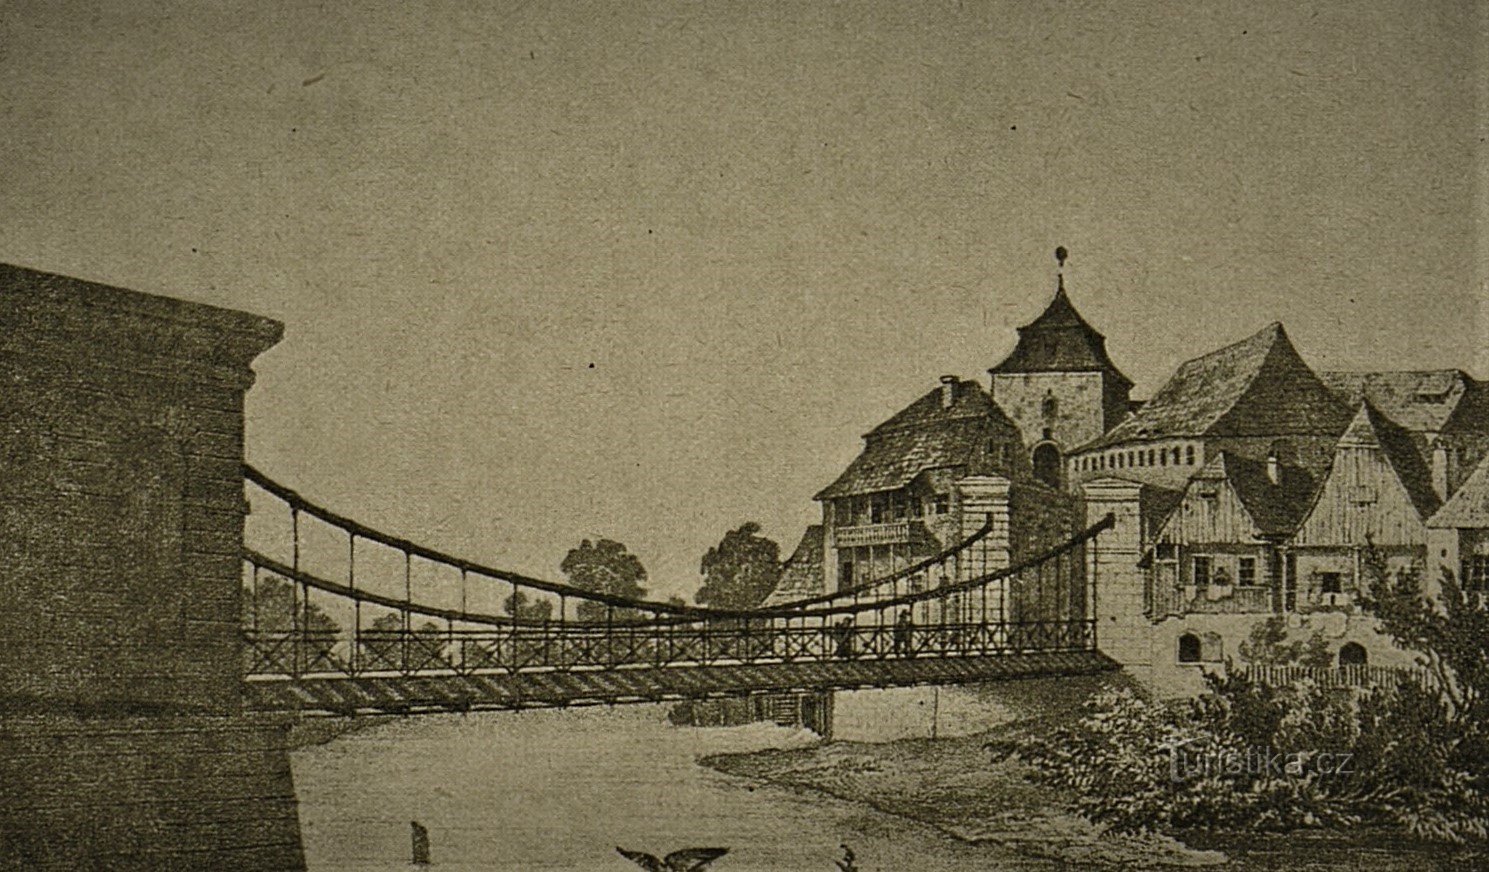 Bron över Elbe och Podzidni-kvarnen bakom den (Jaroměř, 2-talets andra hälft)